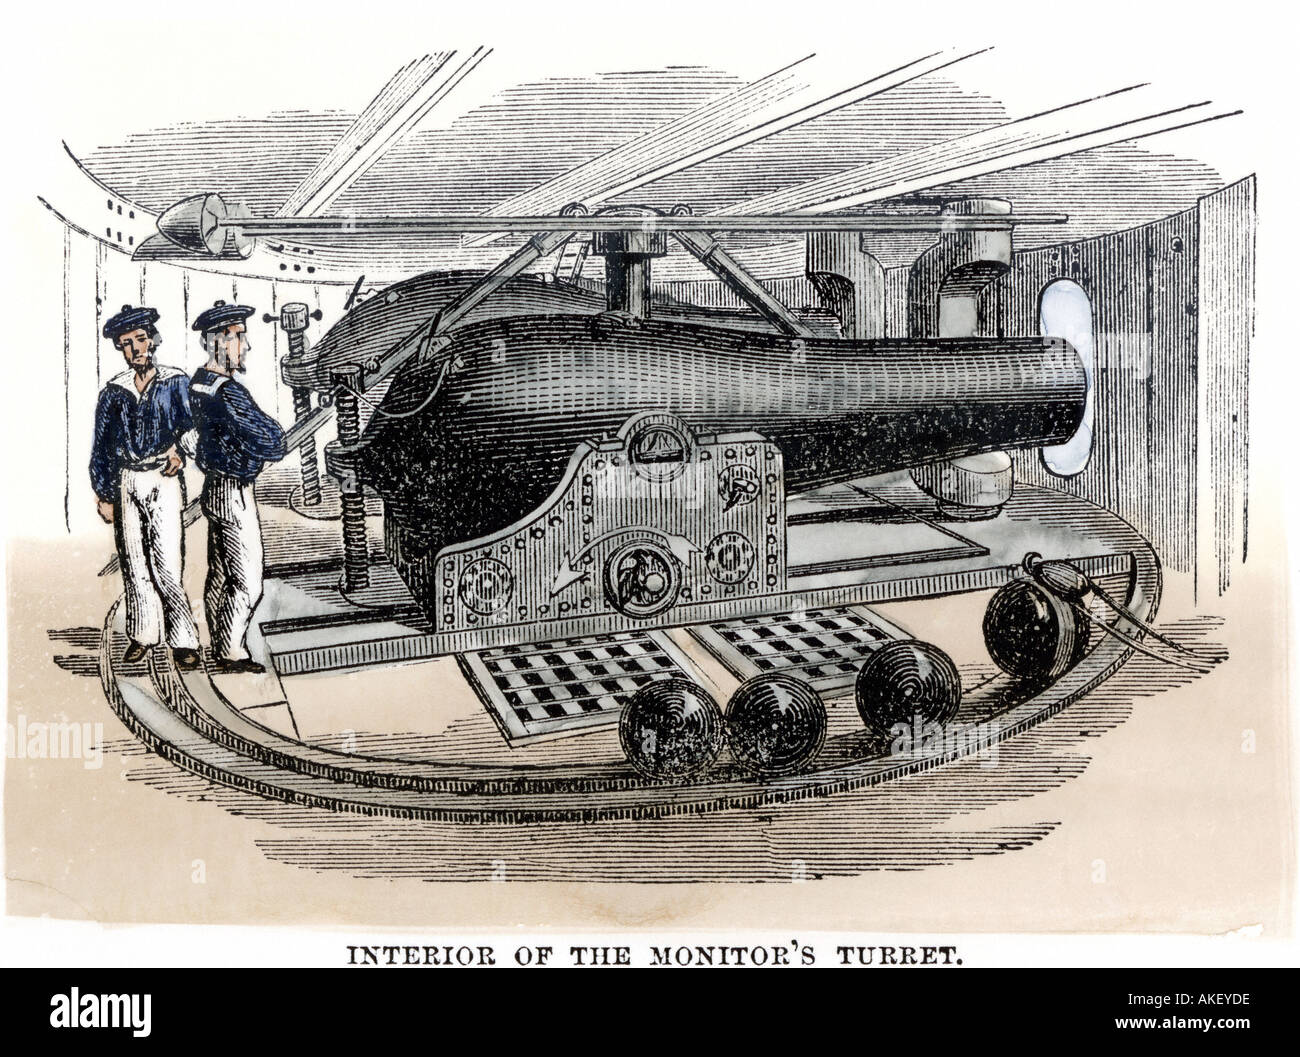 La artillería en el interior de la torreta giratoria de la cañonera estadounidense acorazada Monitor durante la Guerra Civil Americana. Xilografía coloreada a mano Foto de stock